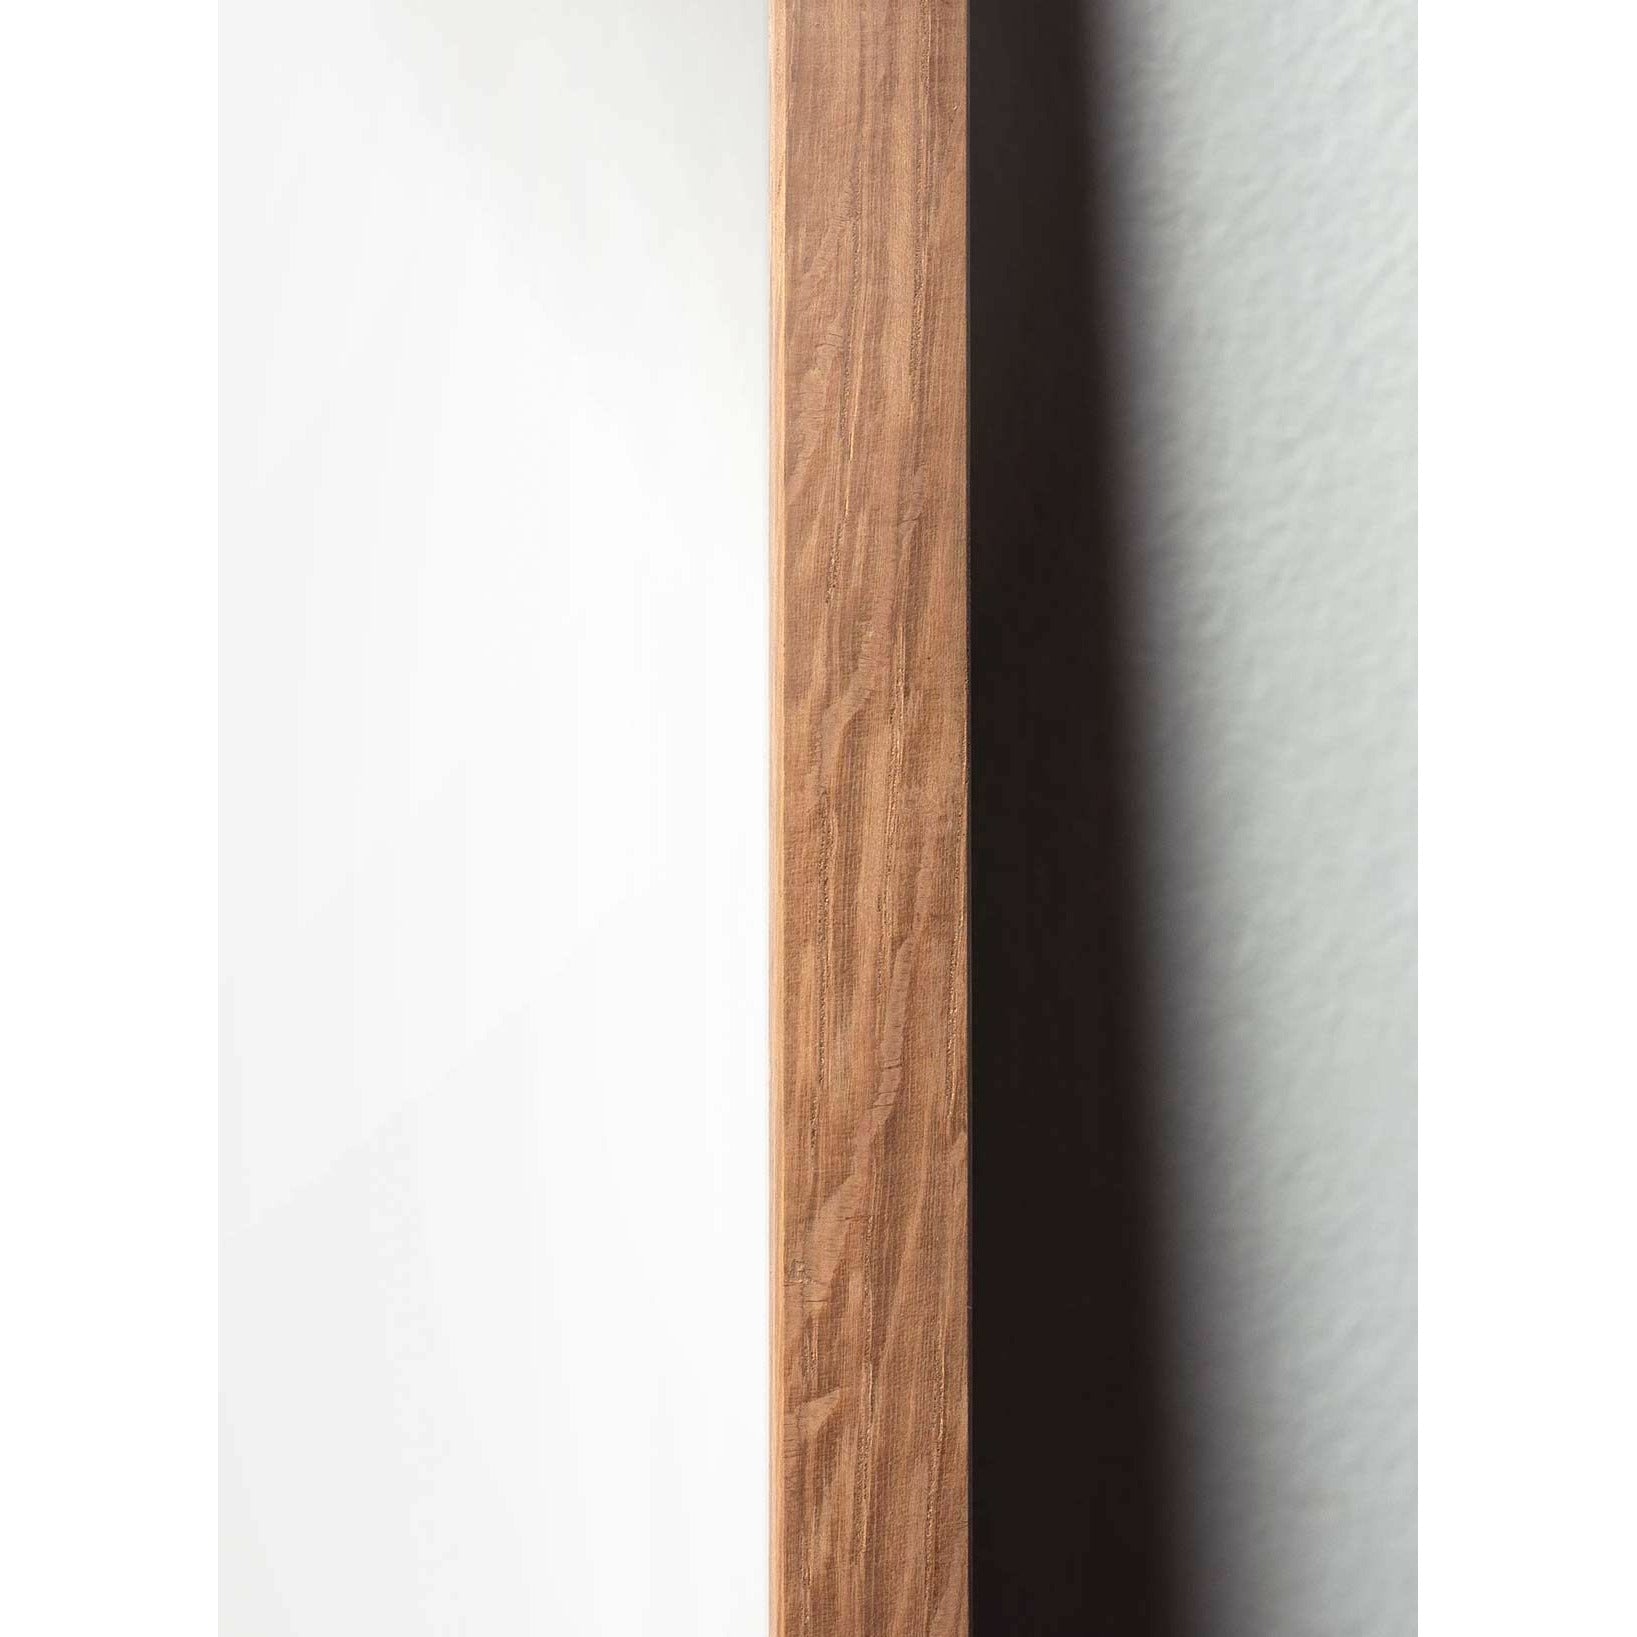 Brainchild Eierlijnposter, frame gemaakt van licht hout A5, witte achtergrond